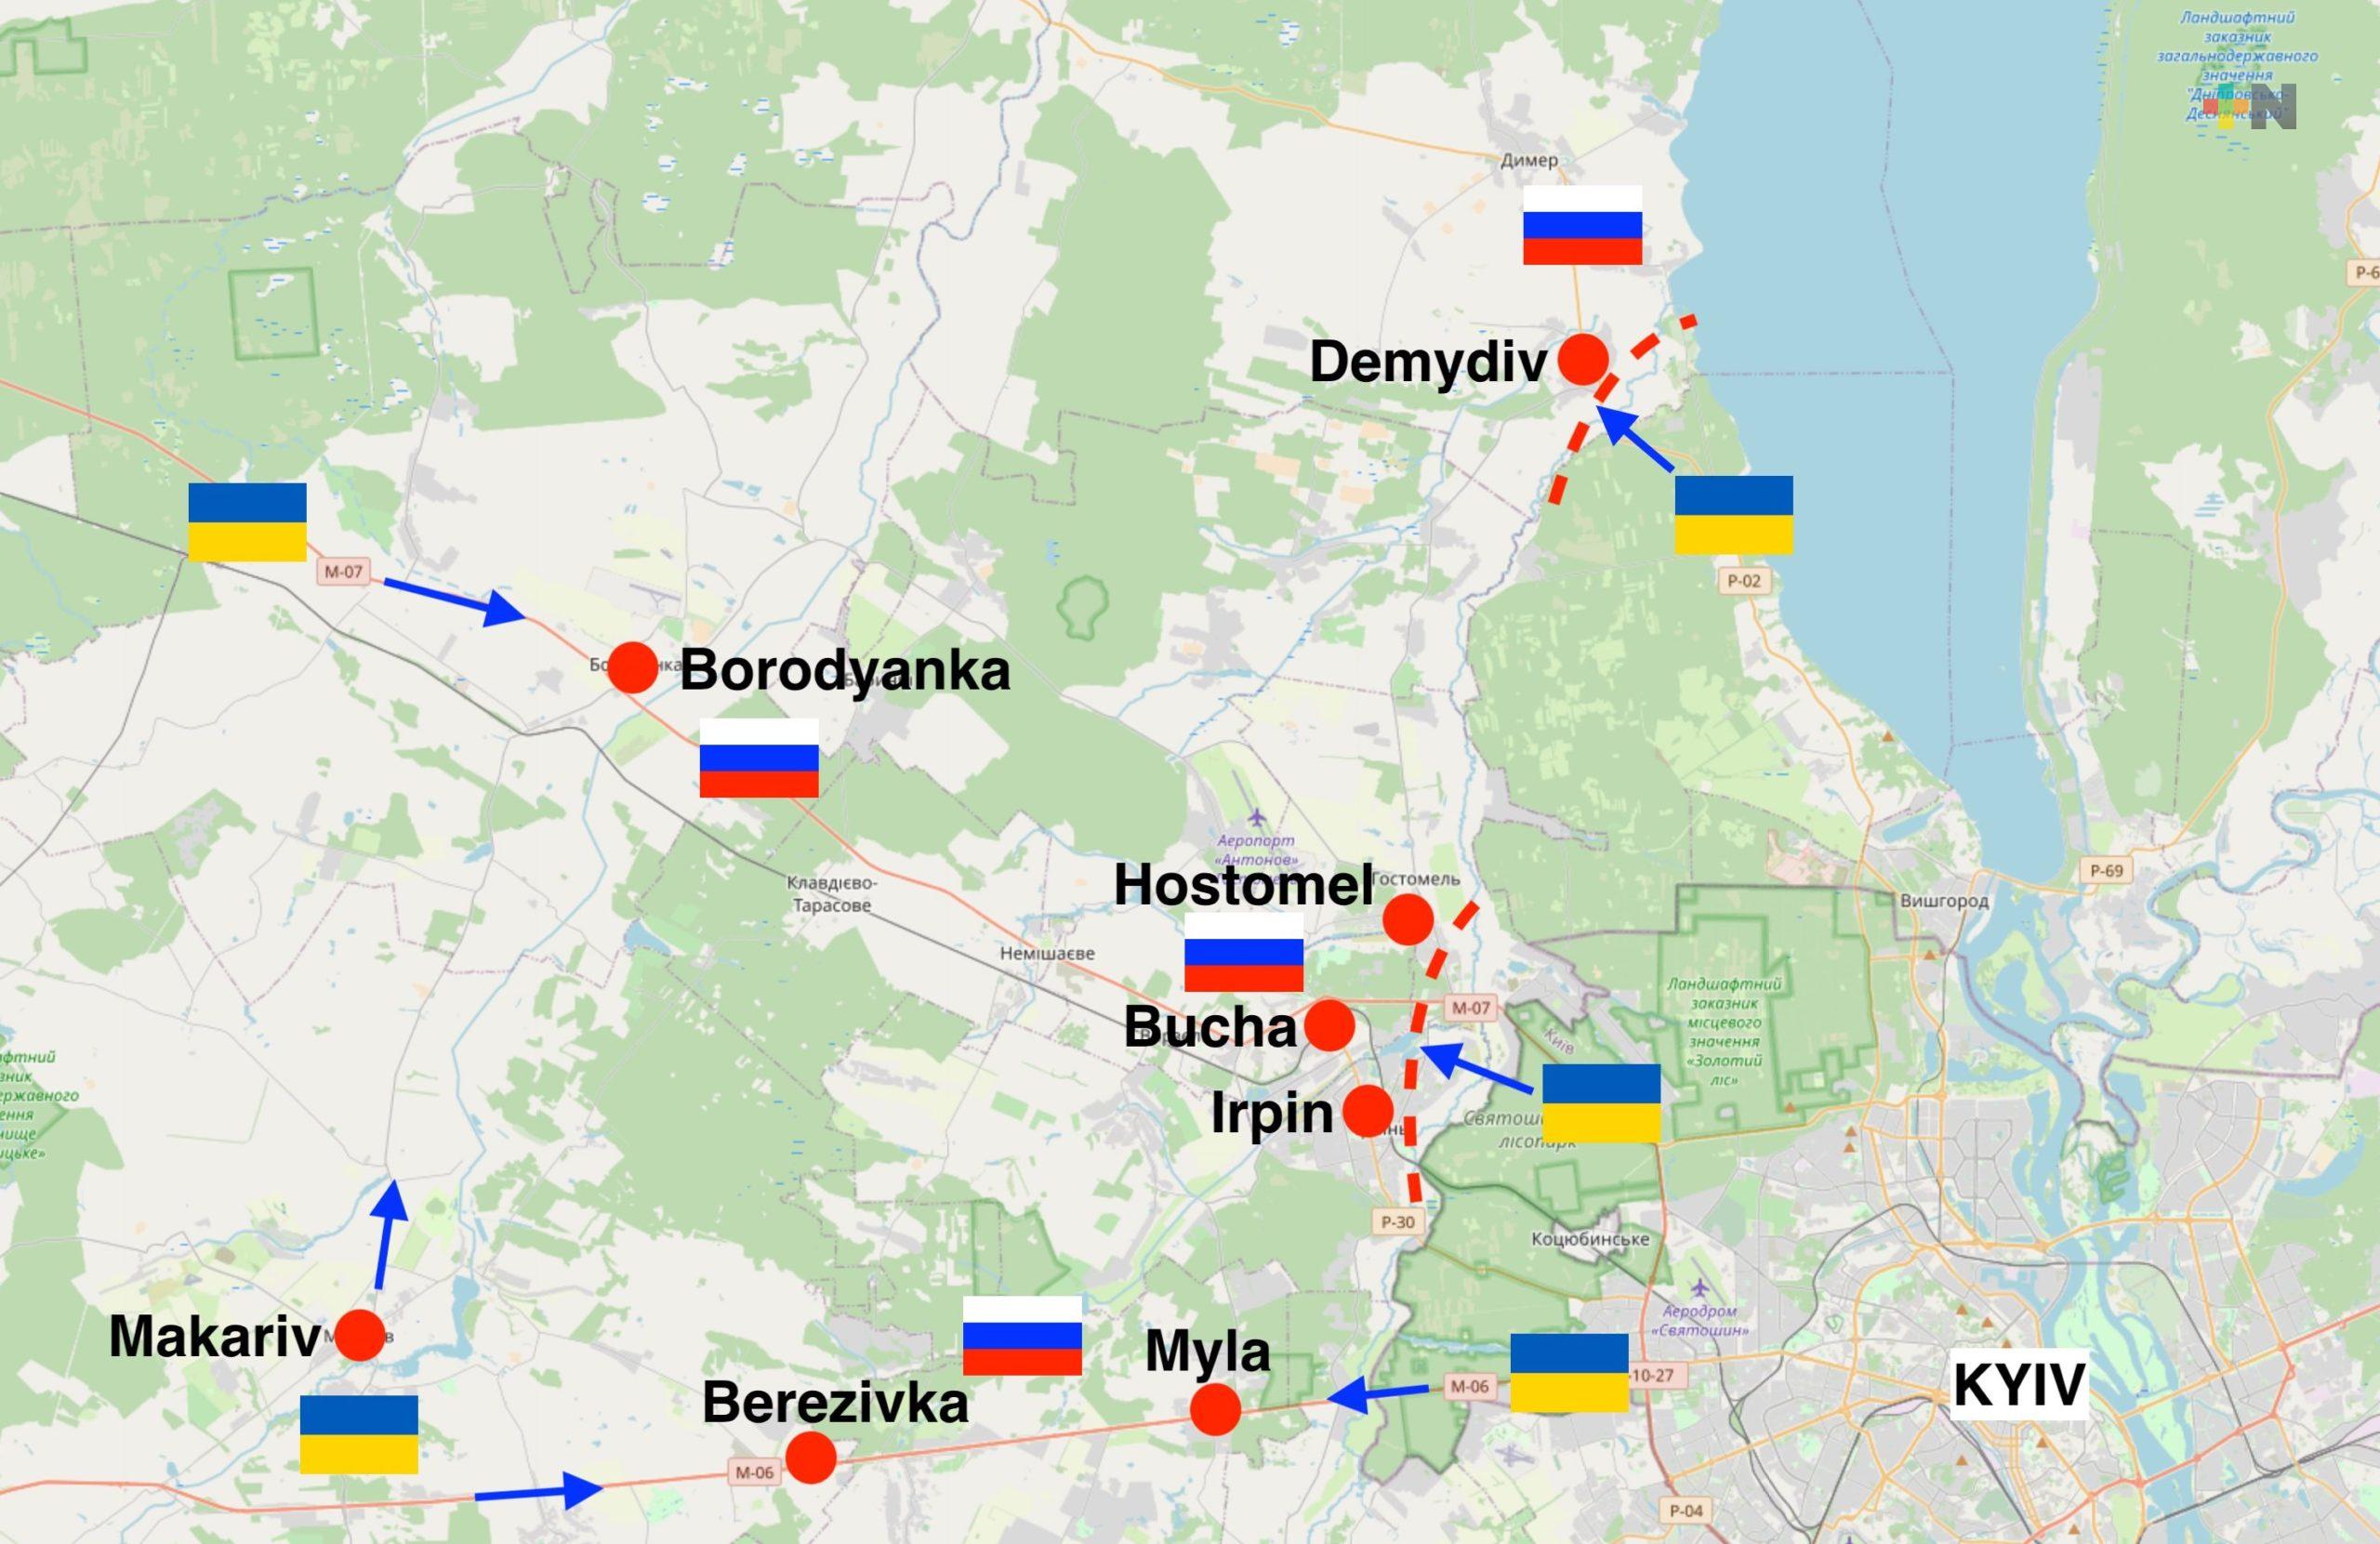 Tropas rusas fueron expulsadas de Kiev, Ucrania recupera el suburbio de Makariv